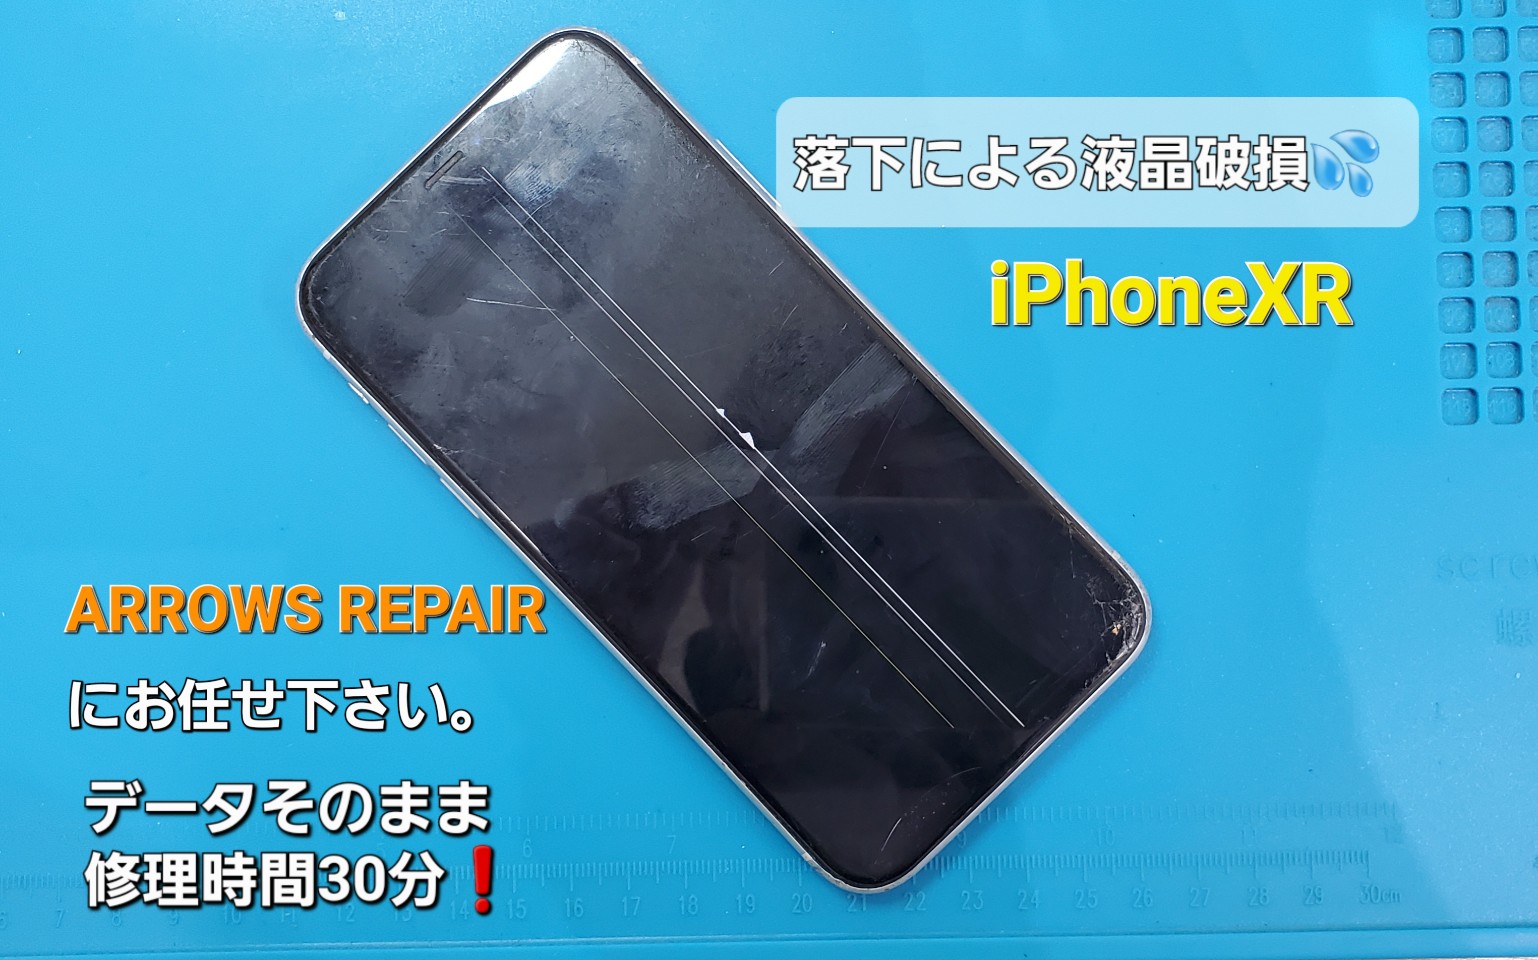 静岡県よりご来店。iPhoneXR画面修理を紹介。|安城駅徒歩3分|iPhone・Switch・iPad修理ならアロウズリペア安城がおすすめ！JR安城駅から徒歩3分、データそのまま即日修理、Switch修理もお任せ下さい。お客様のお悩み解決致します。